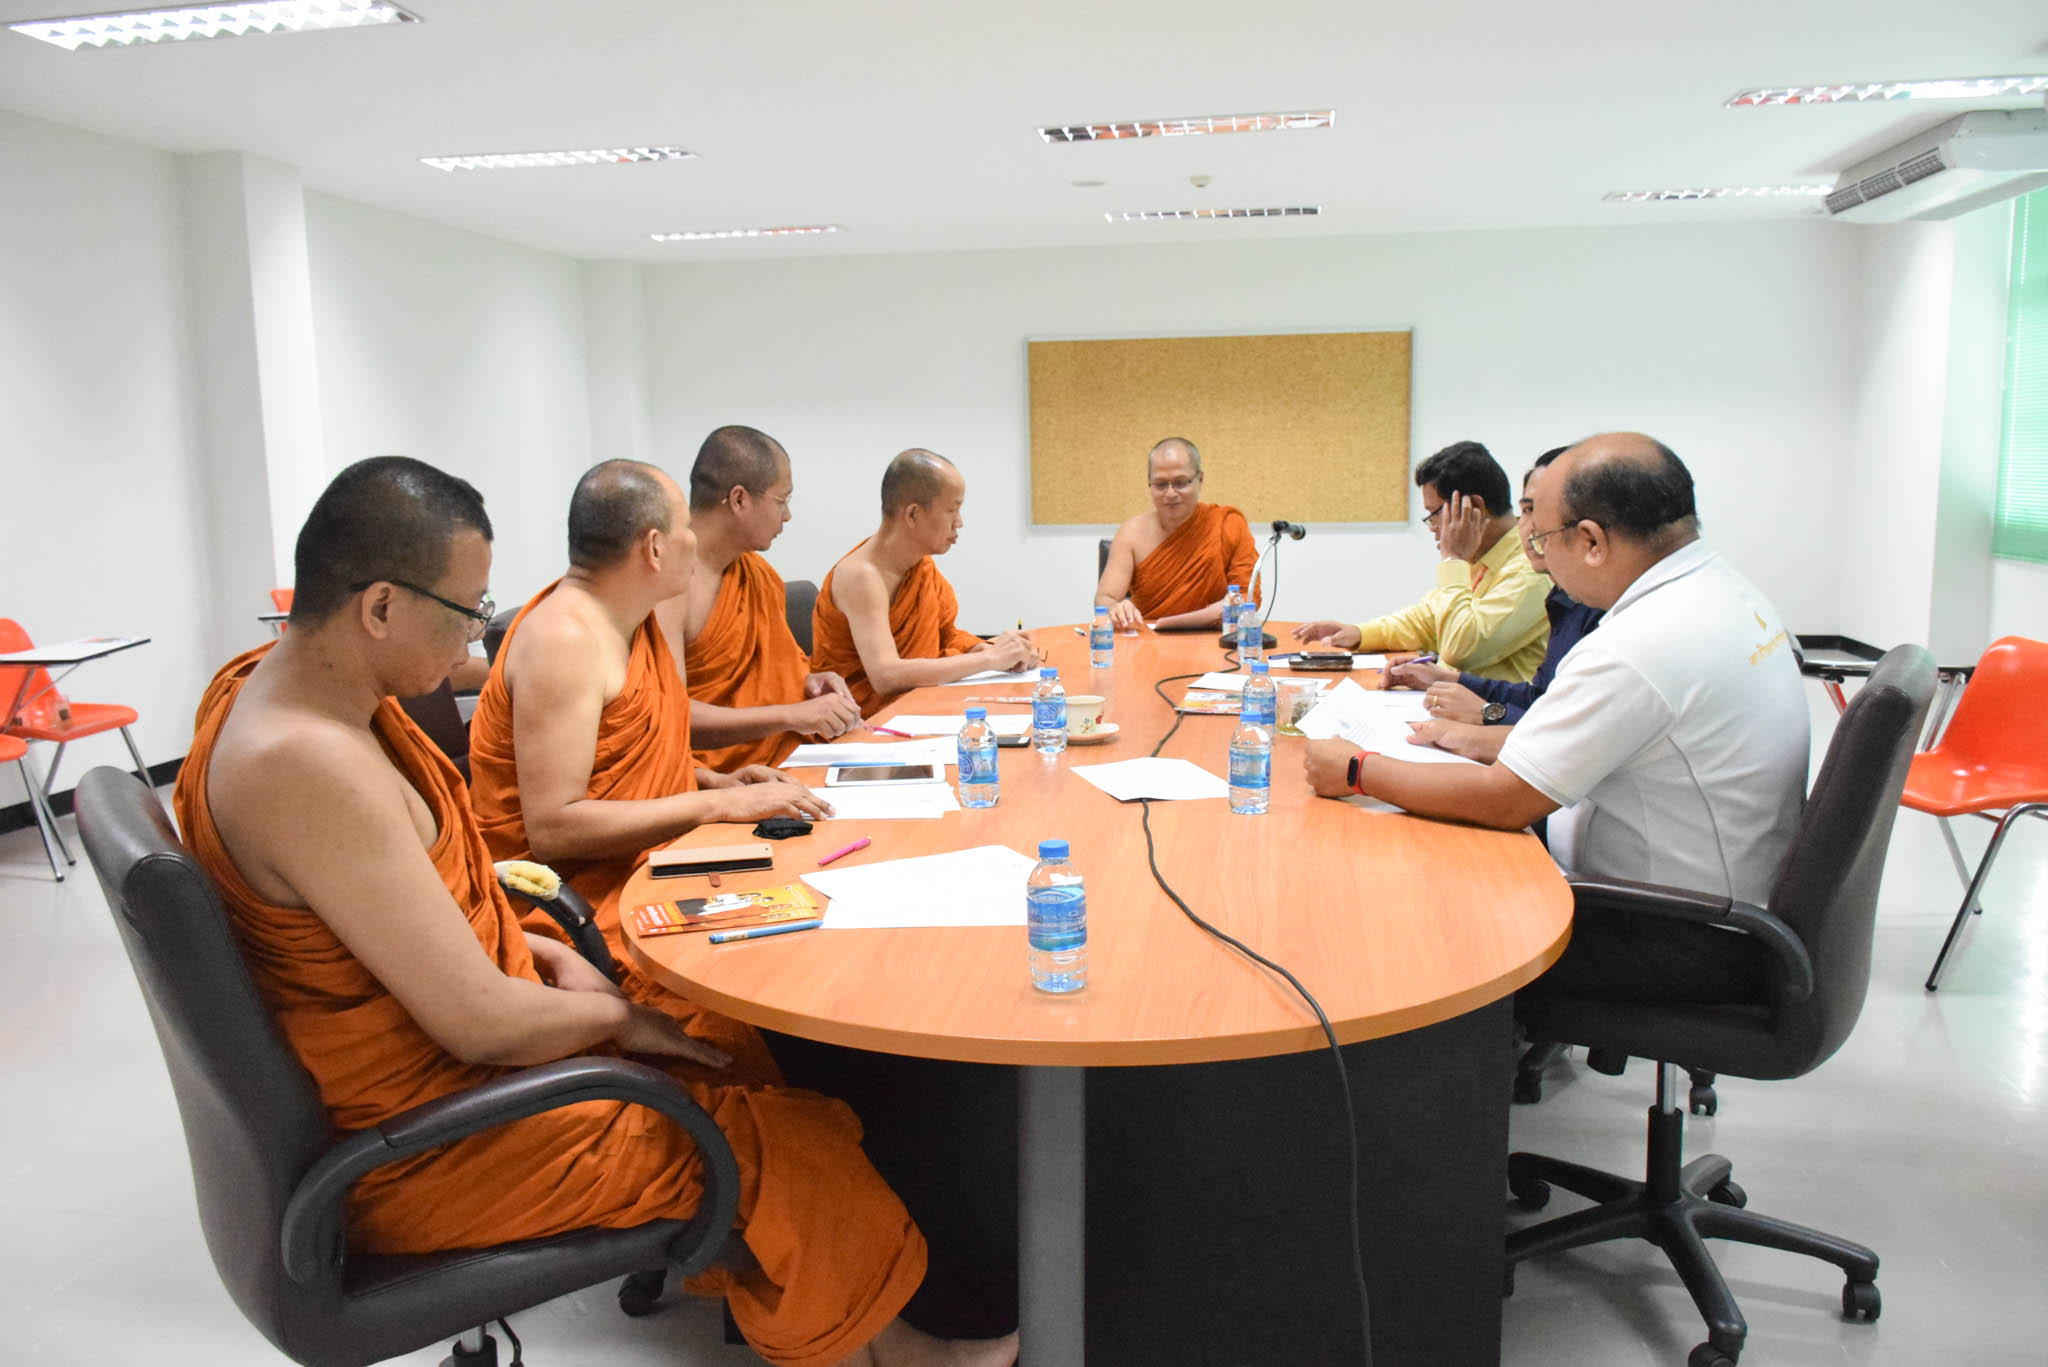 ประชุม การจัดการเรียนการสอนพื้นฐานภาษาไทยสำหรับนักศึกษาต่างชาติ